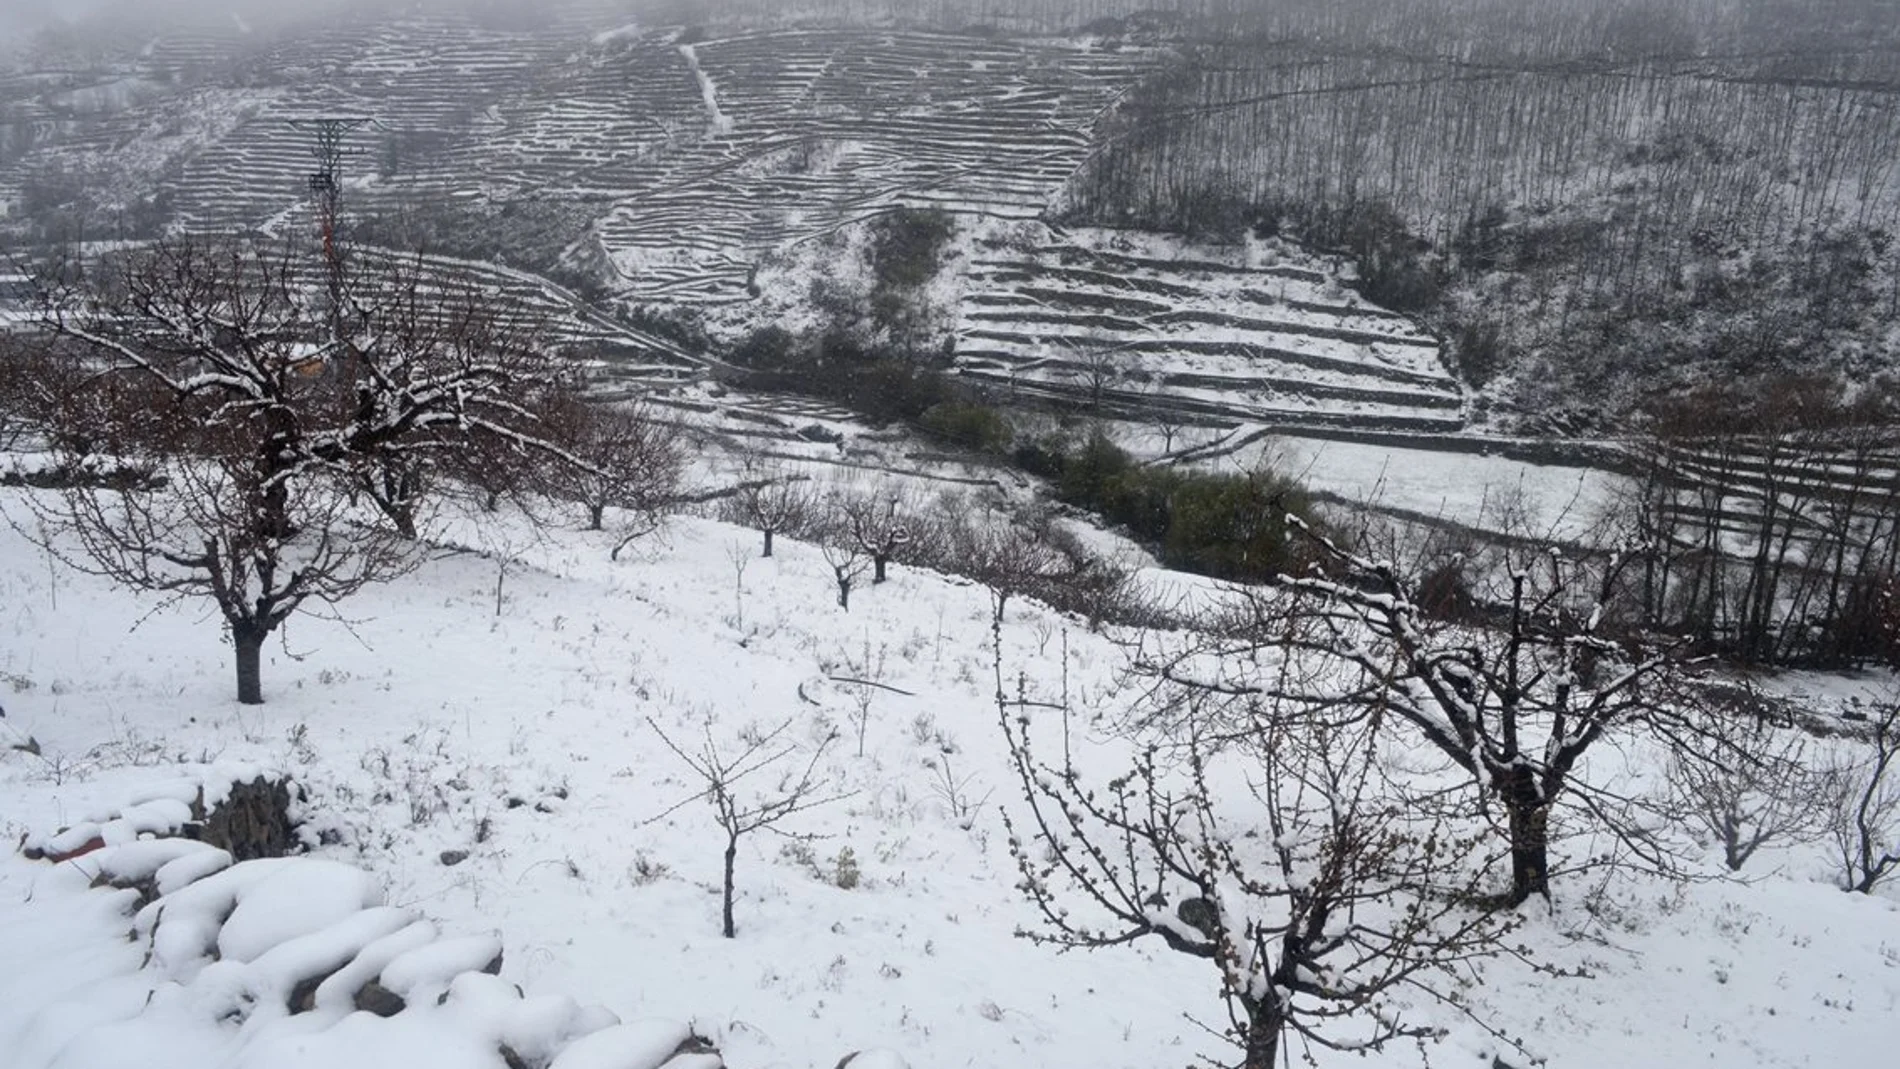  Vista del Valle del Jerte cacereño cubierto de nieve